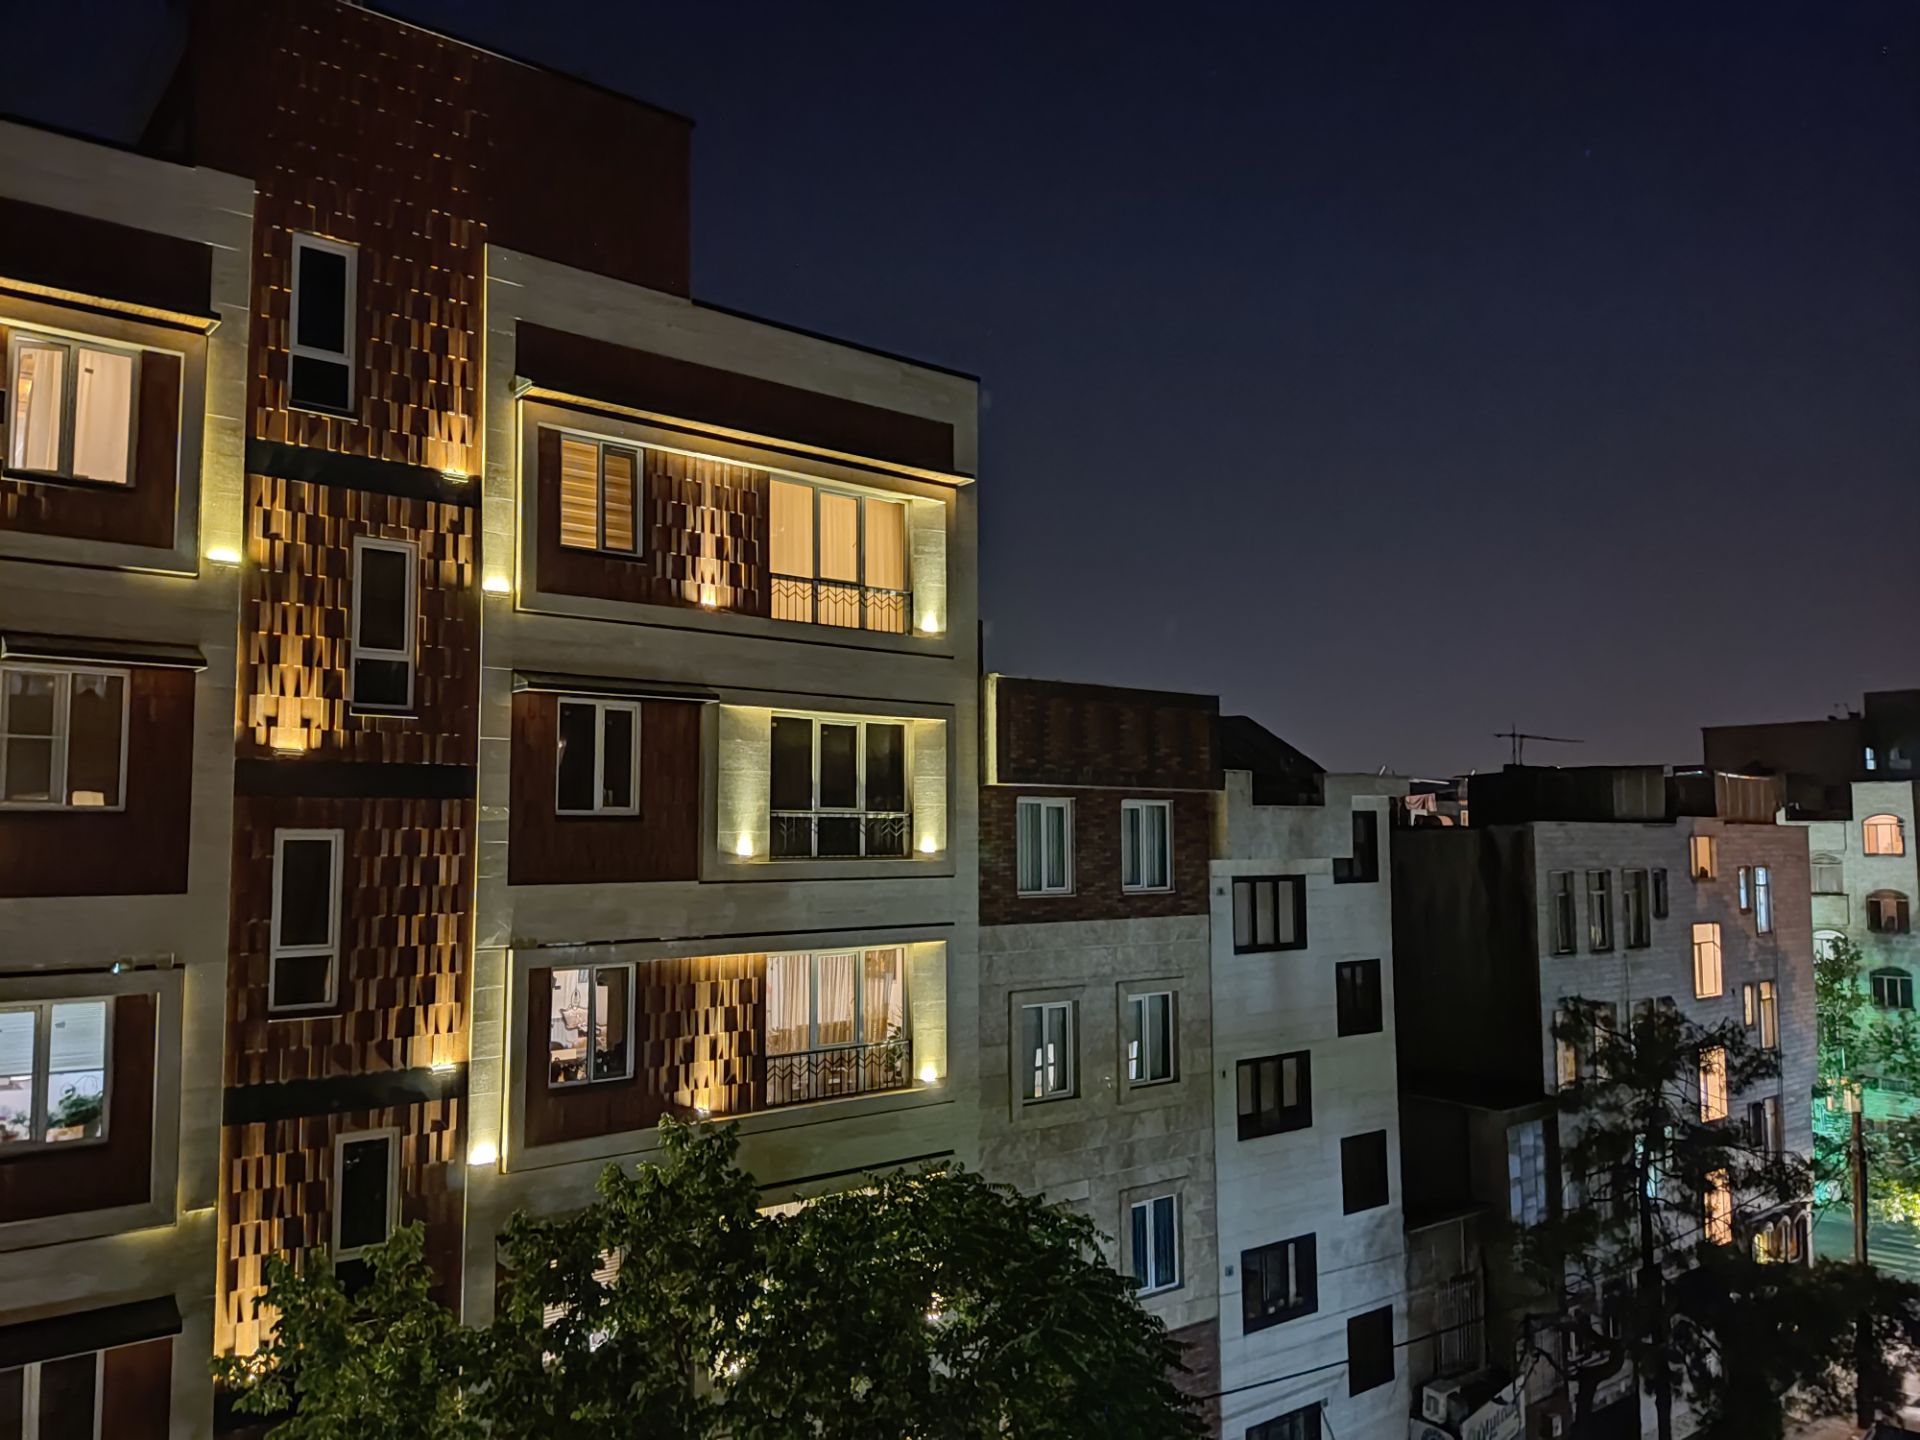 عکس نمونه دوربین اصلی پوکو X3 پرو - نمای ساختمان در تاریکی